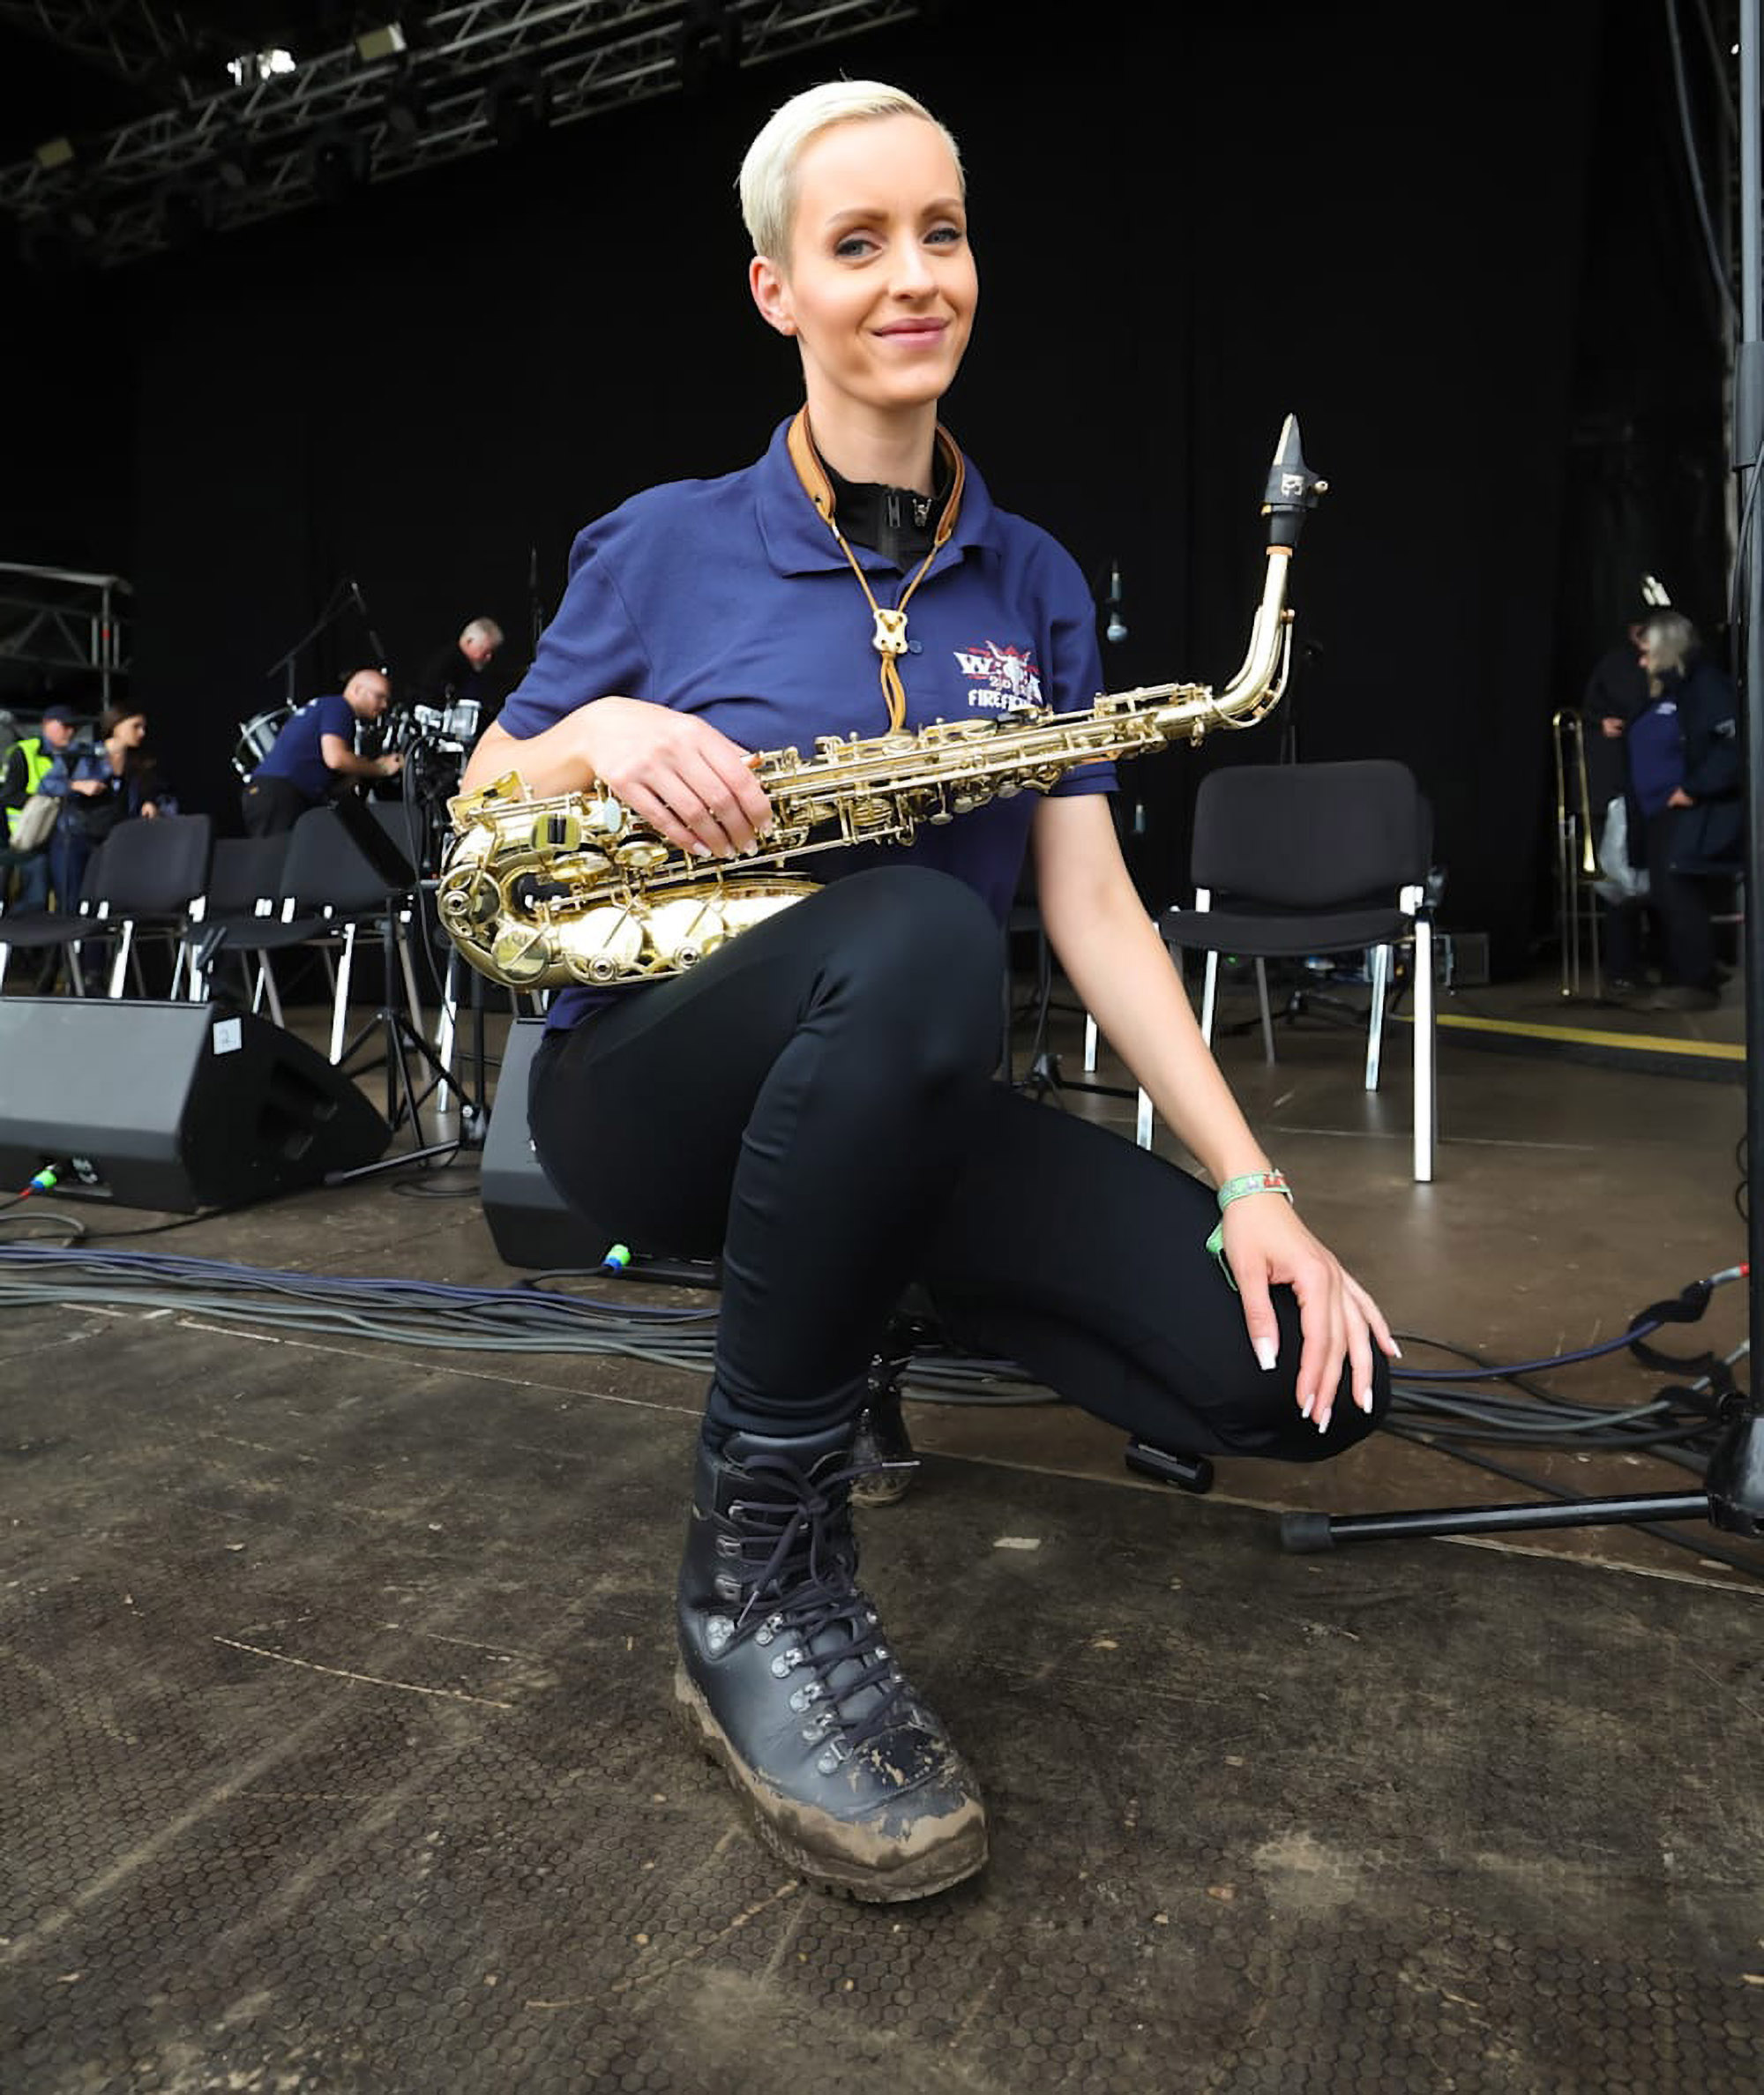 Anike lernte Saxophon spielen, was ihr half, ihre Sprache zu verbessern